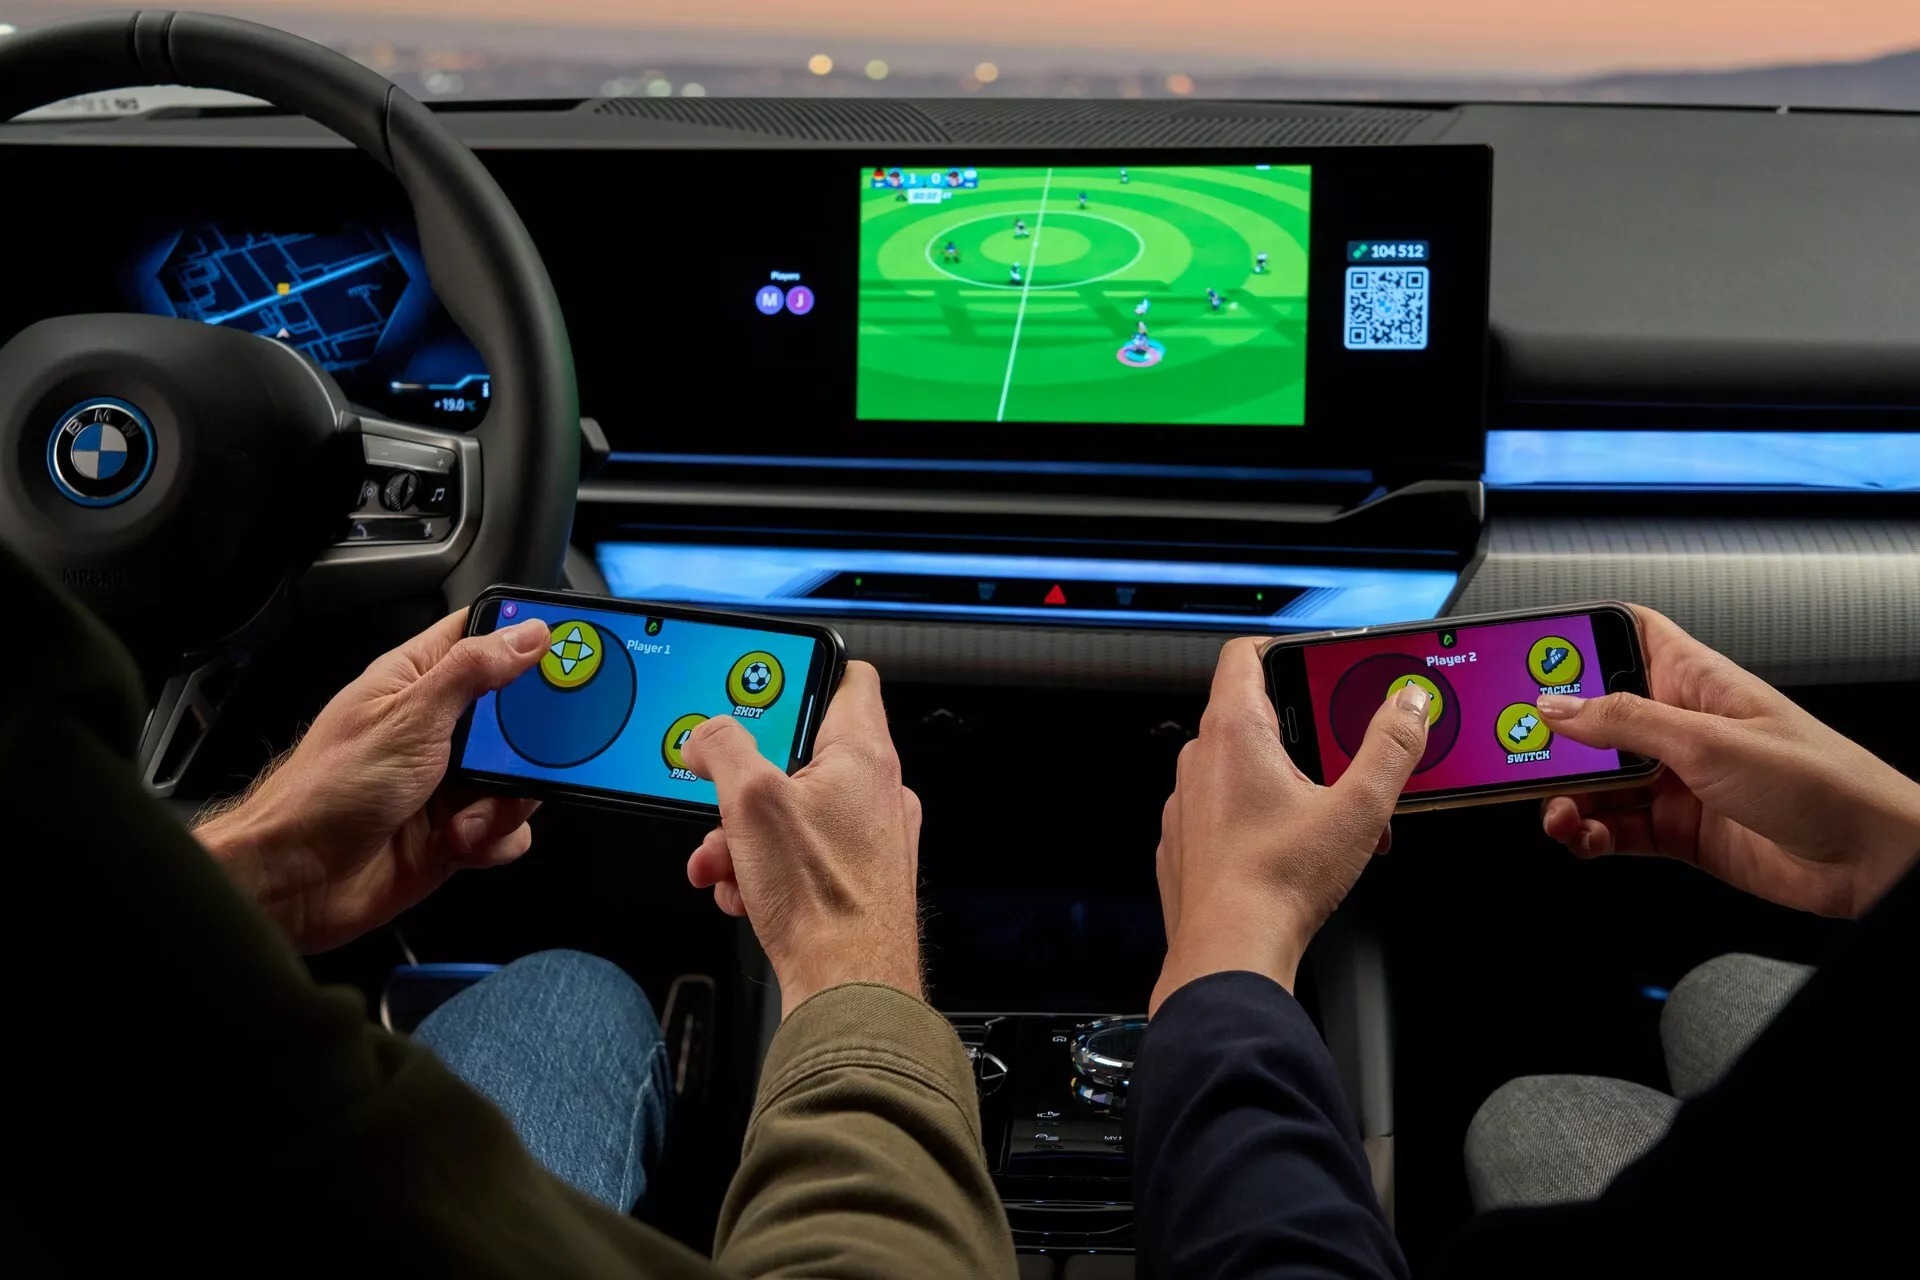 BMW 5-Series hé lộ thêm hệ thống chơi game tích hợp sẵn, dùng smartphone người dùng điều khiển - Ảnh 1.